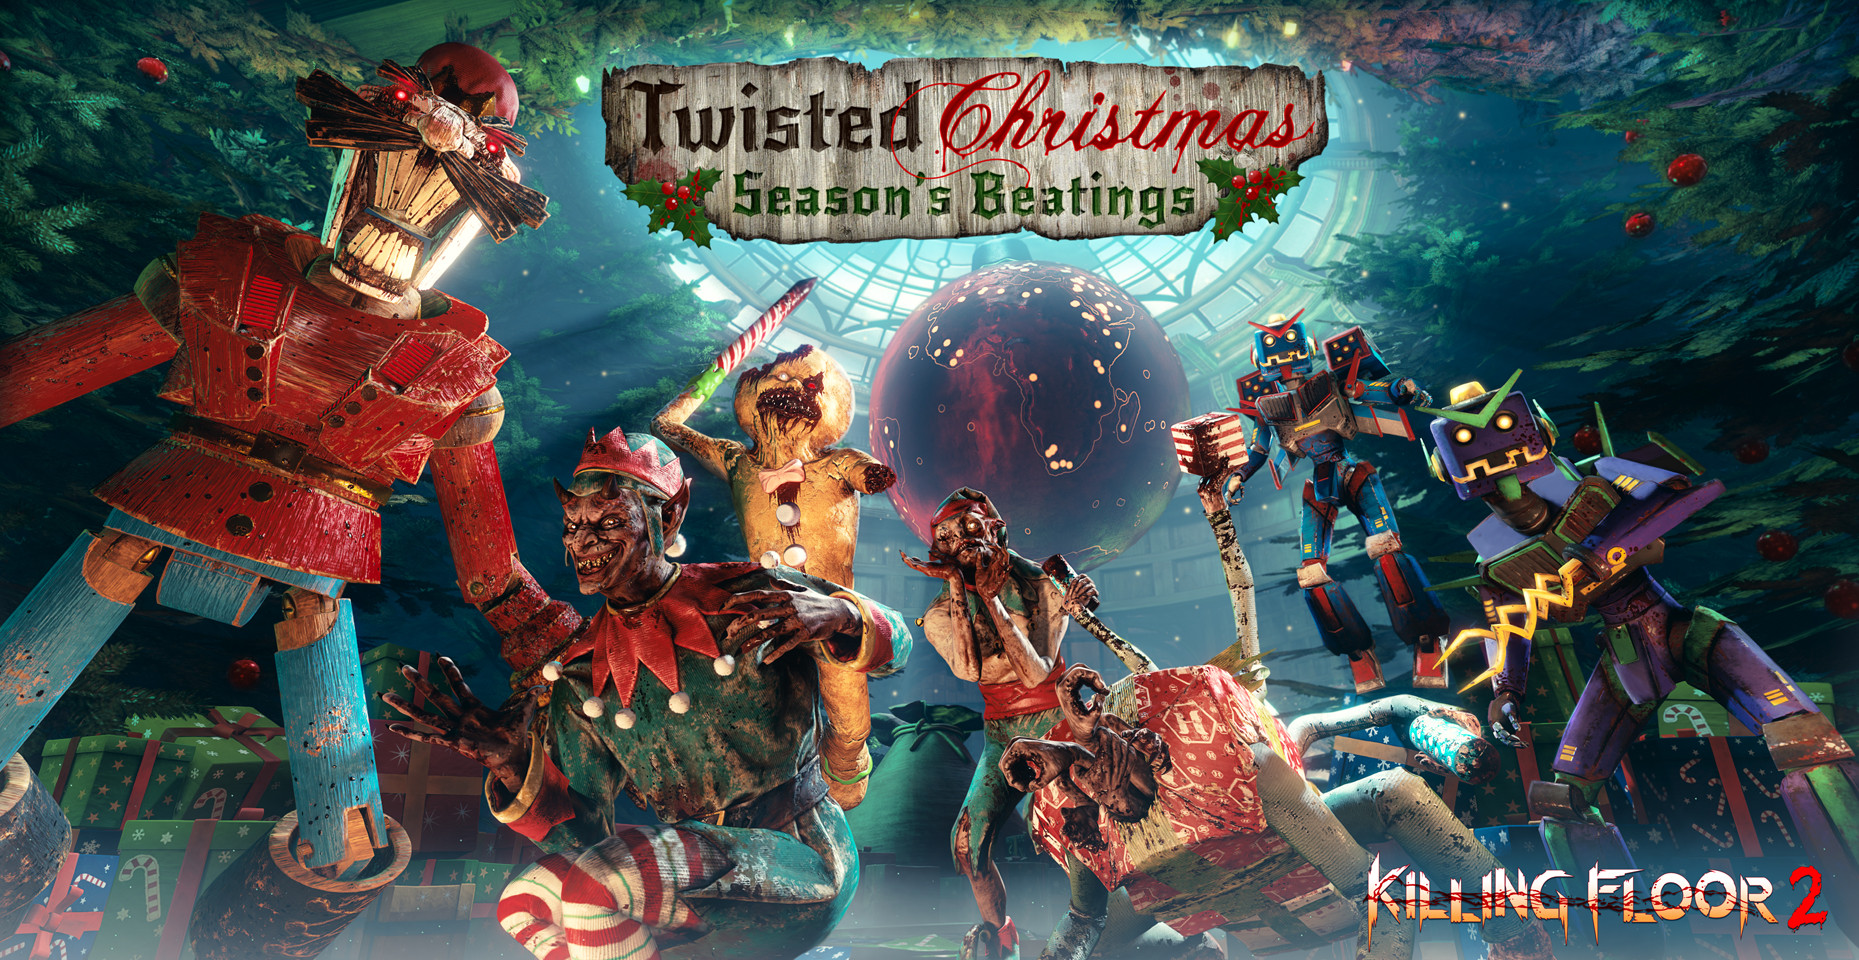 Killing Floor 2 Christmas
 Killing Floor 2 Twisted Christmas Season s Beatings